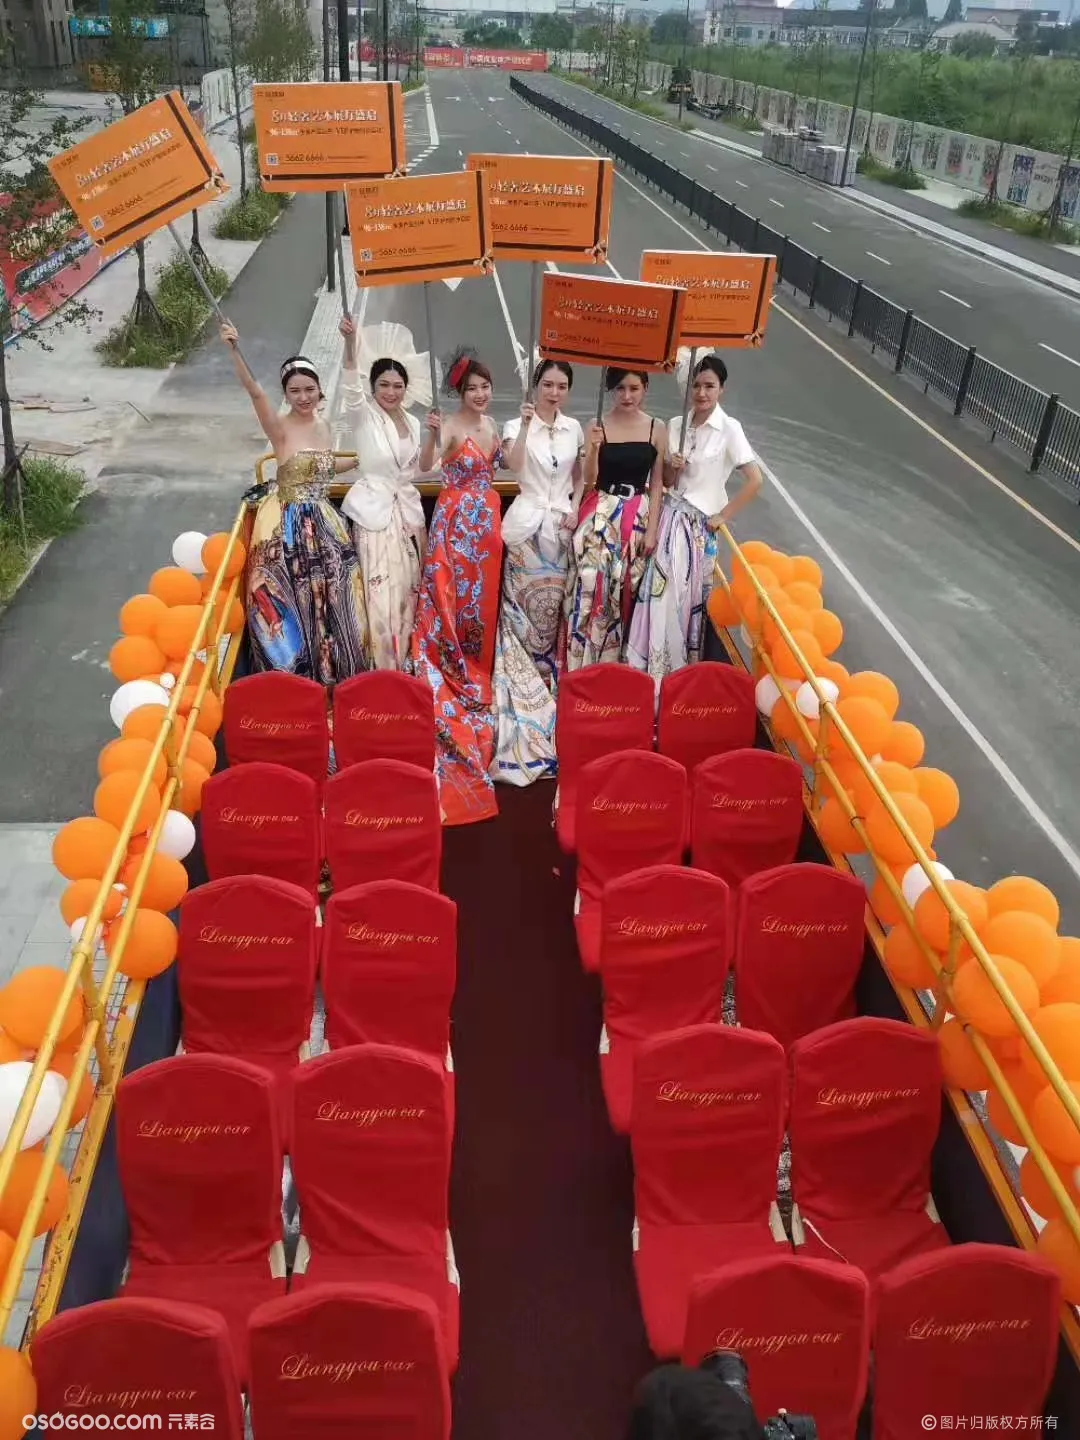 华东地区独家自购敞篷豪华版双层巴士 出租双层巴士巡游展览